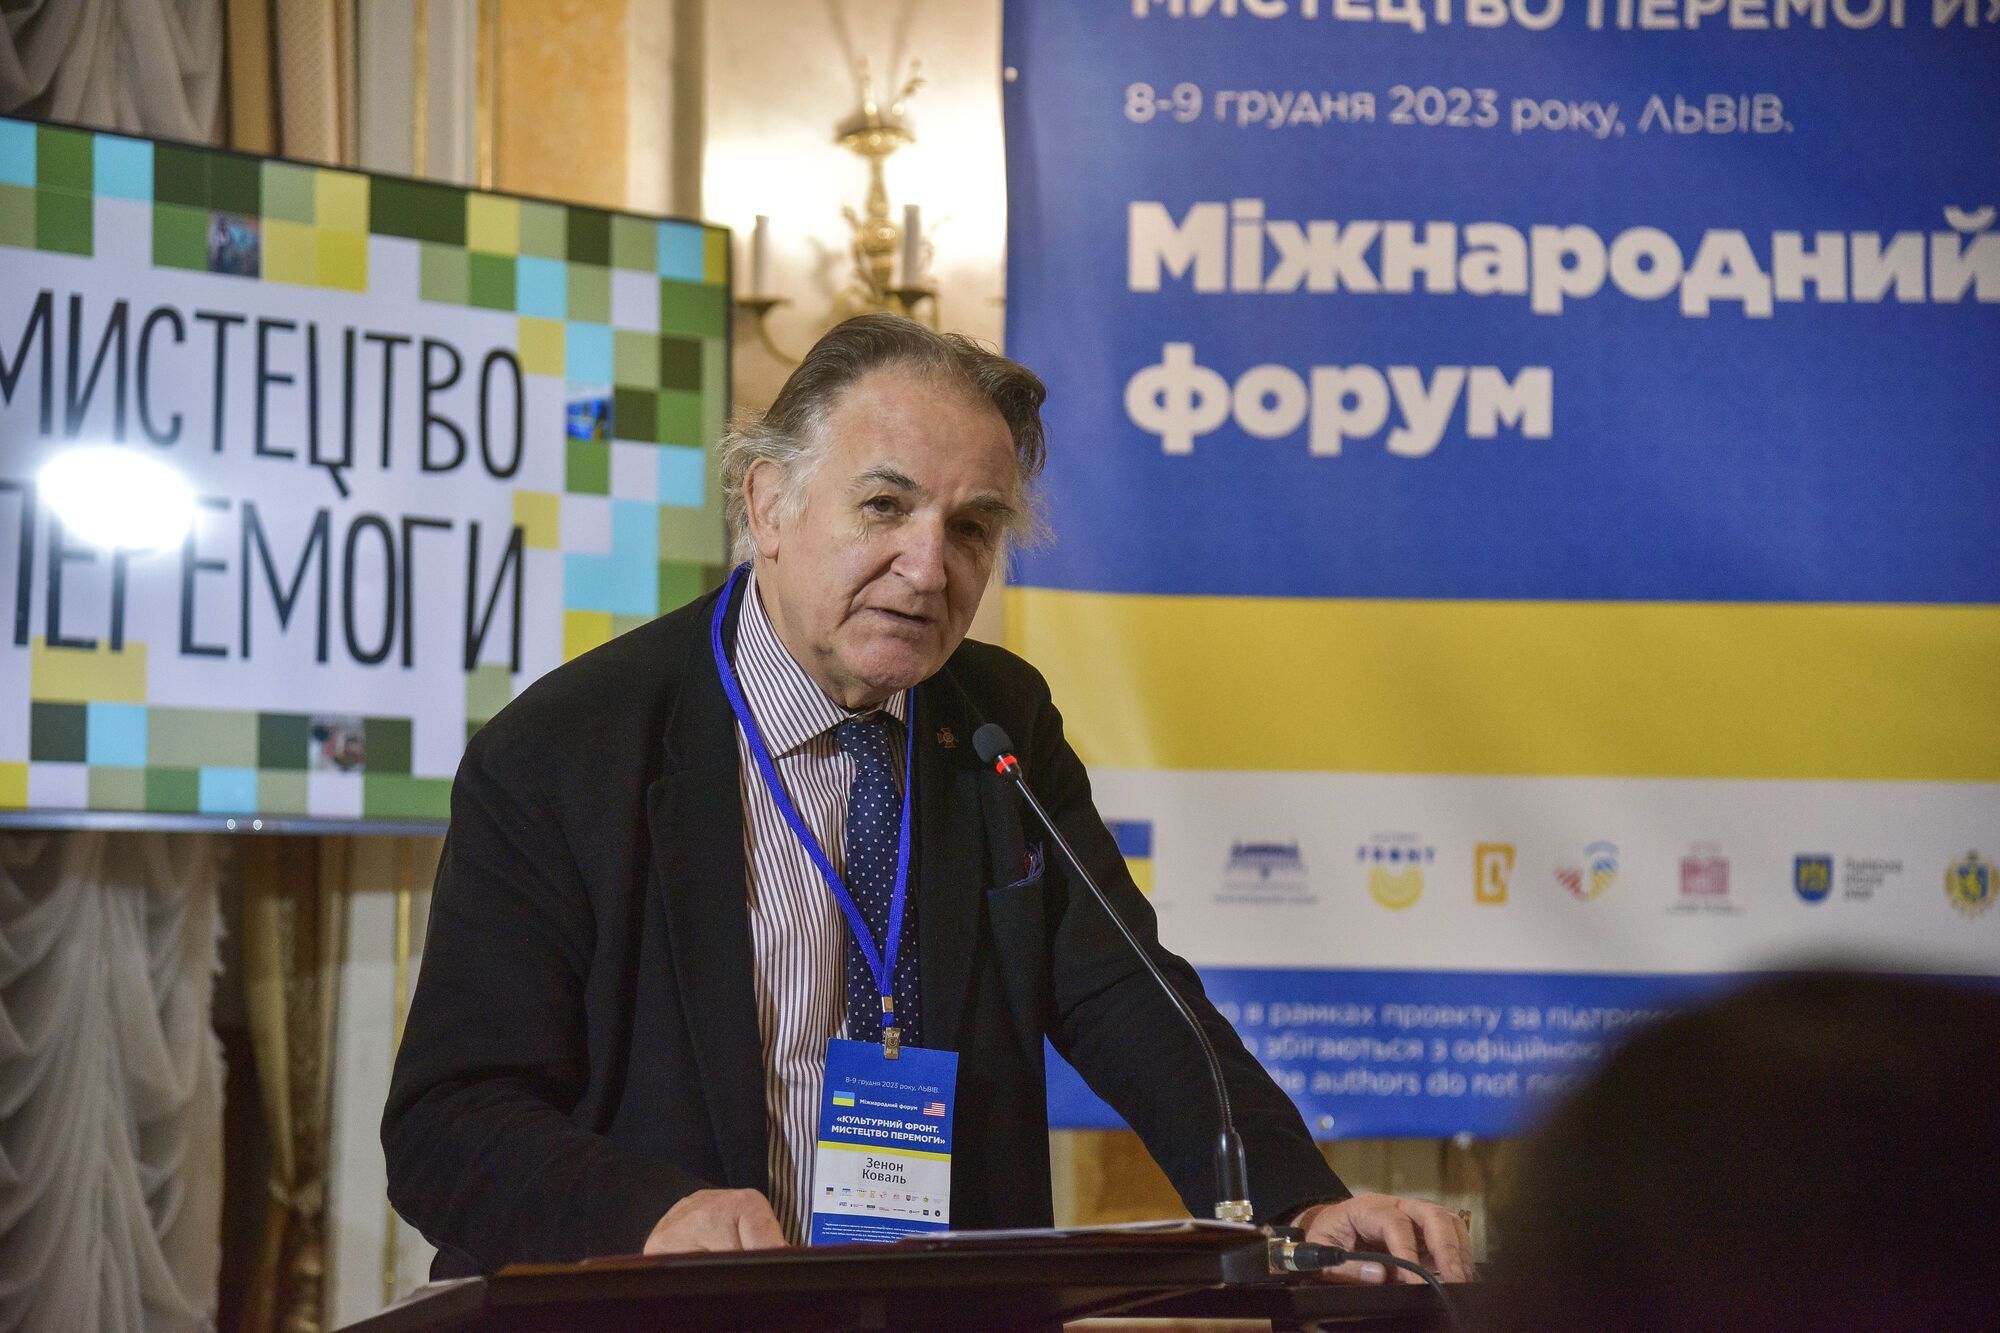 Во Львове прошел Форум "Искусство победы": его участники обсудили сохранение украинской уникальности